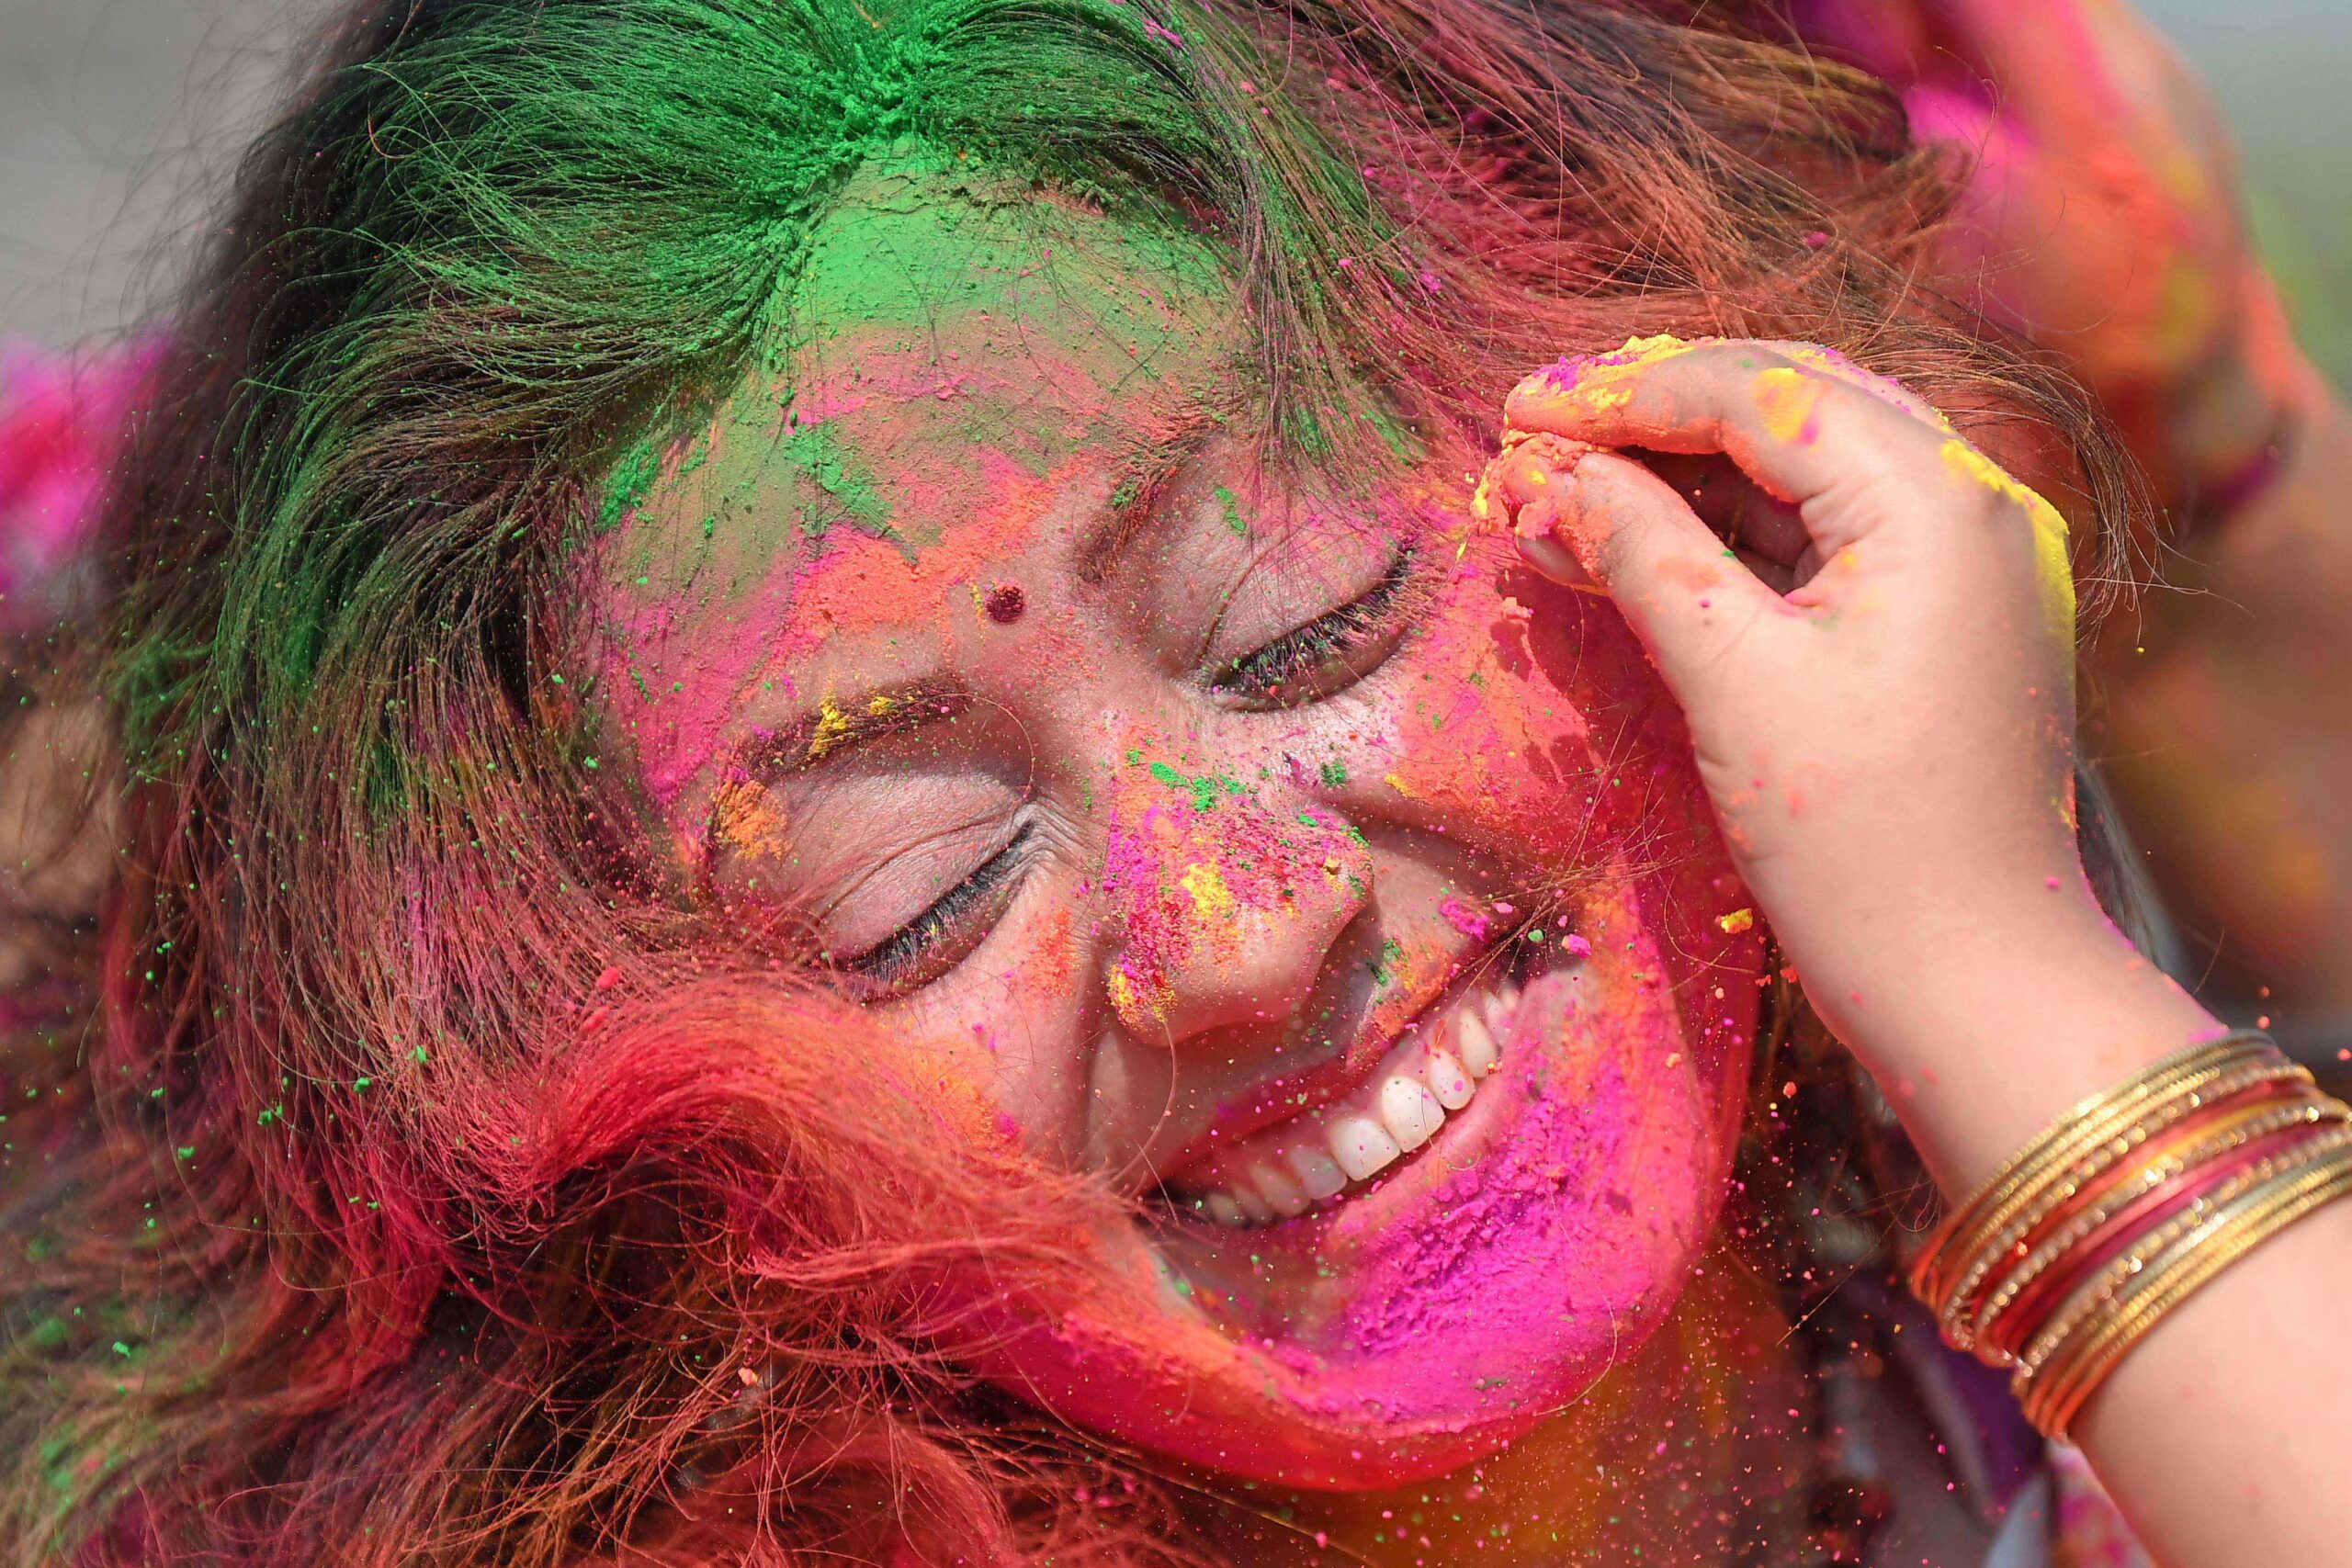 หญิงอินเดียสาดแป้งหลากสีสันฉลอง 'เทศกาลโฮลี'